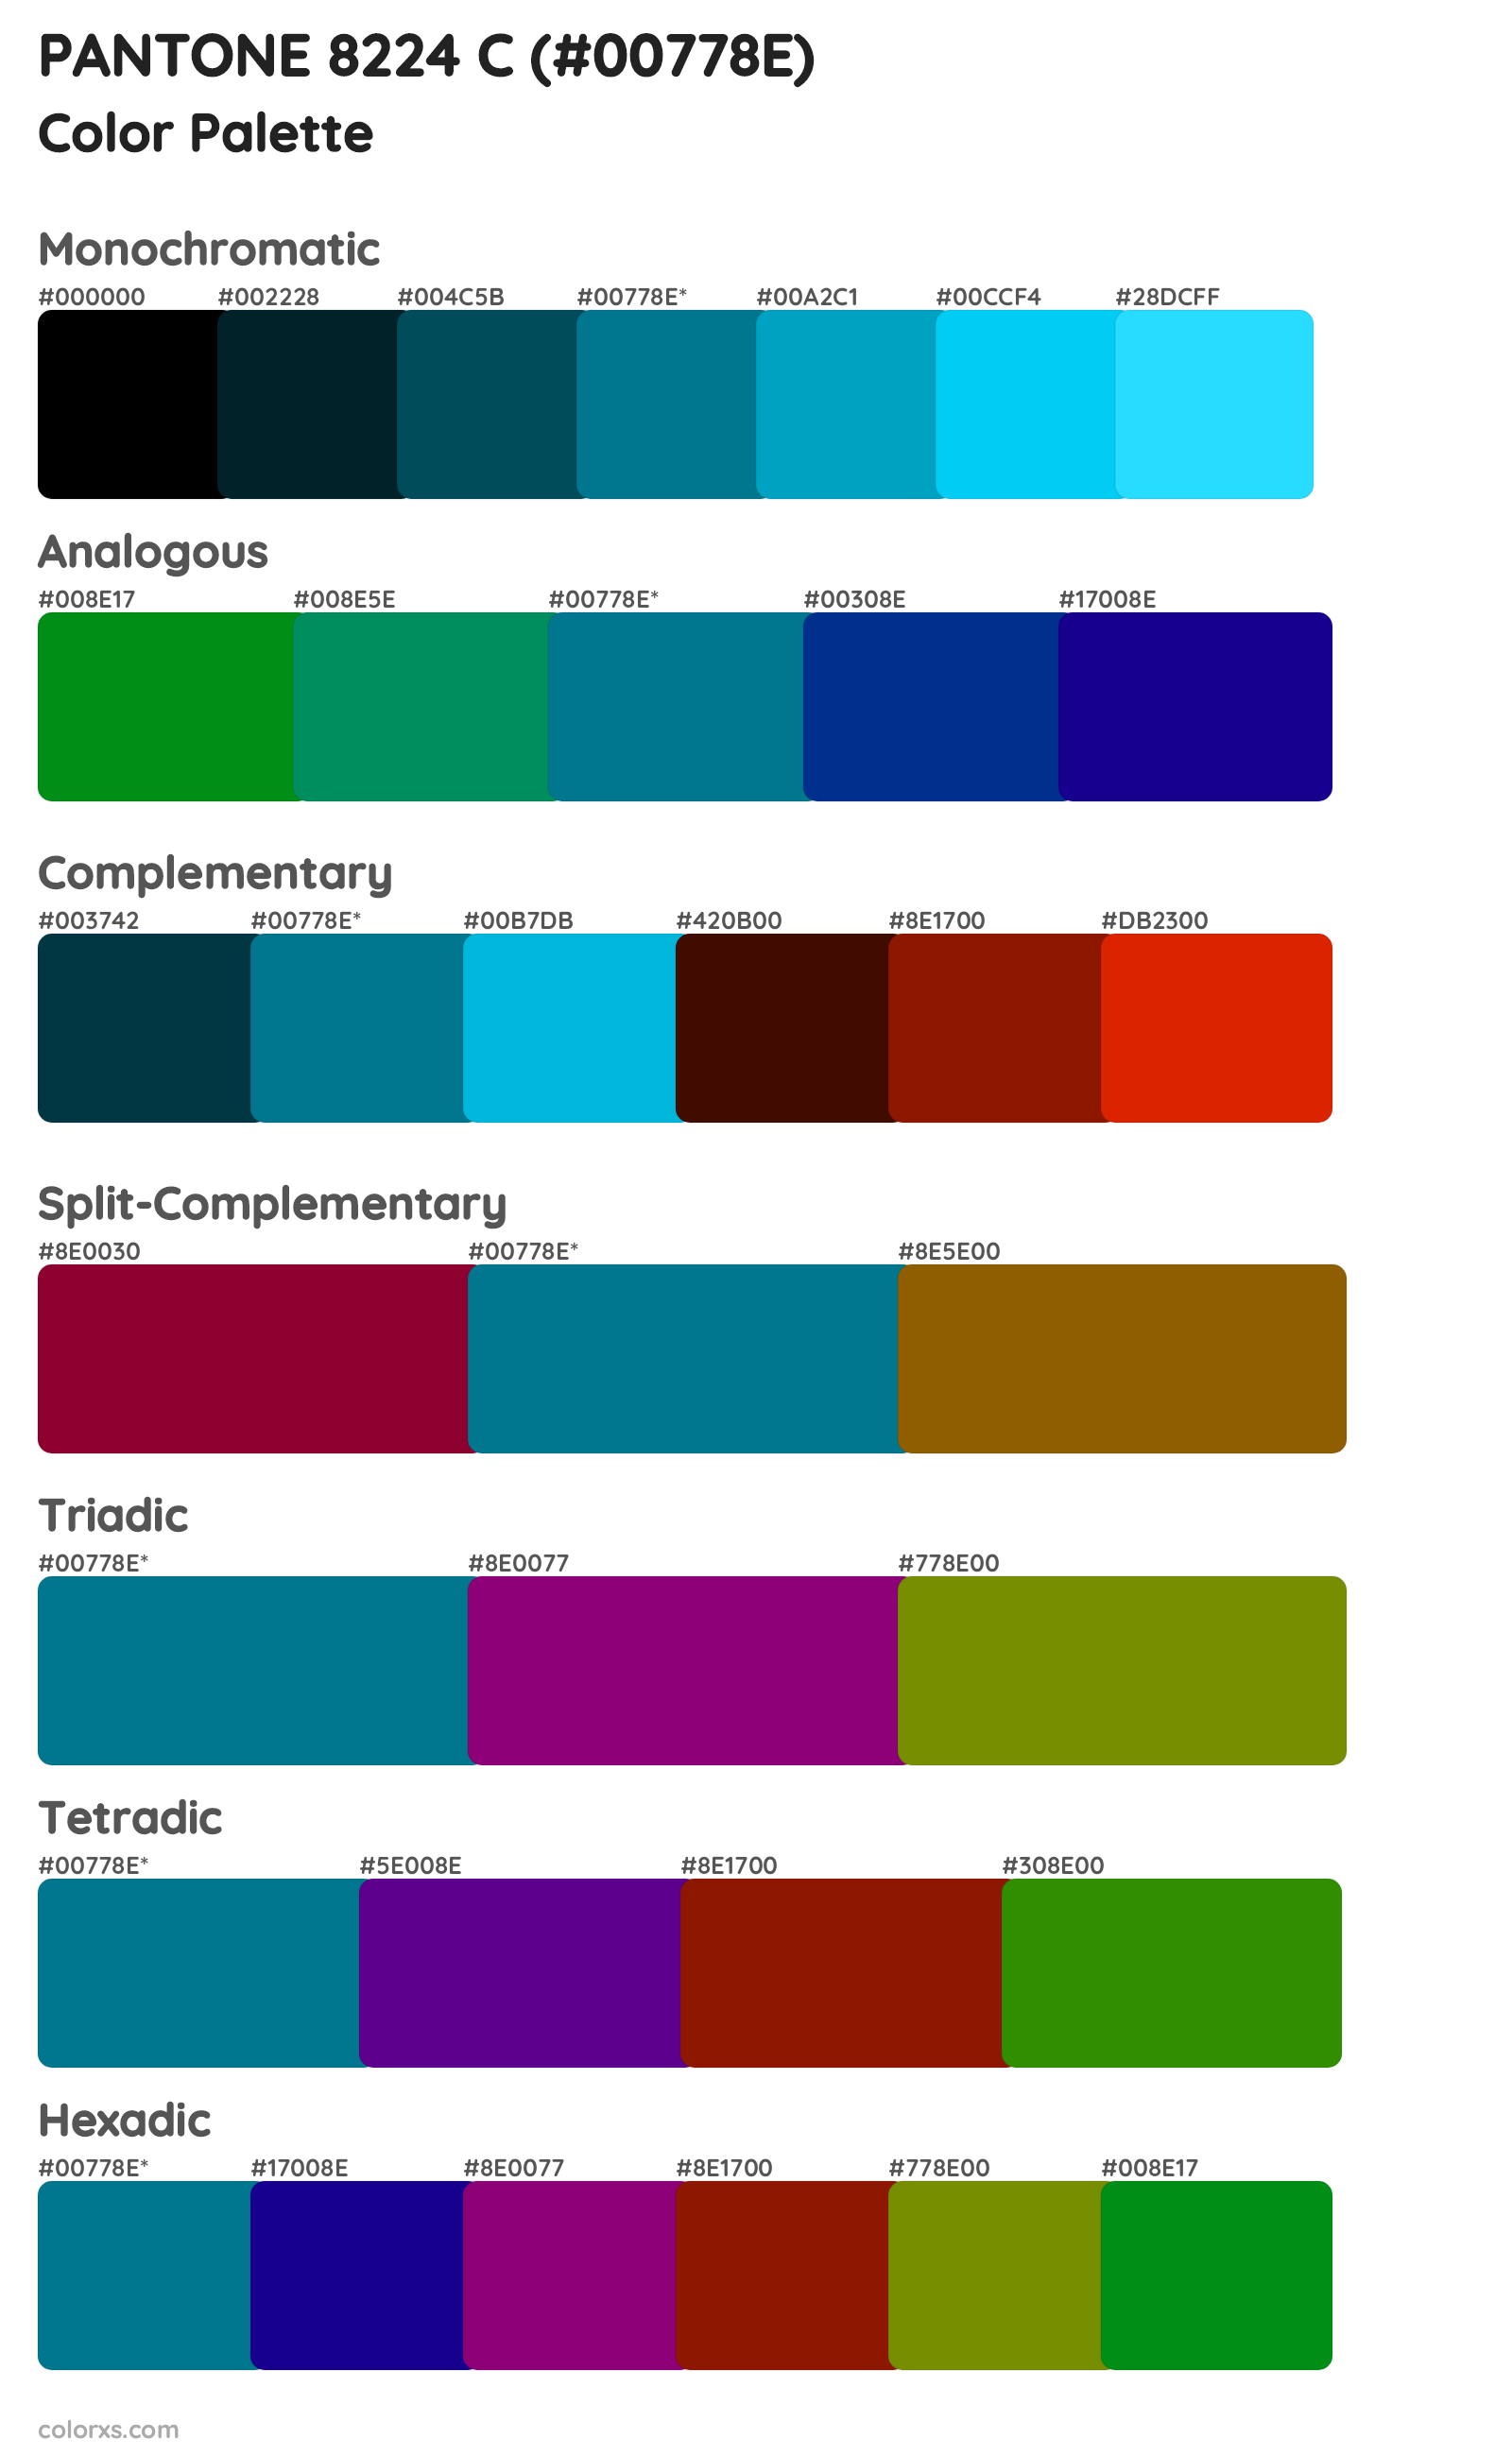 PANTONE 8224 C Color Scheme Palettes